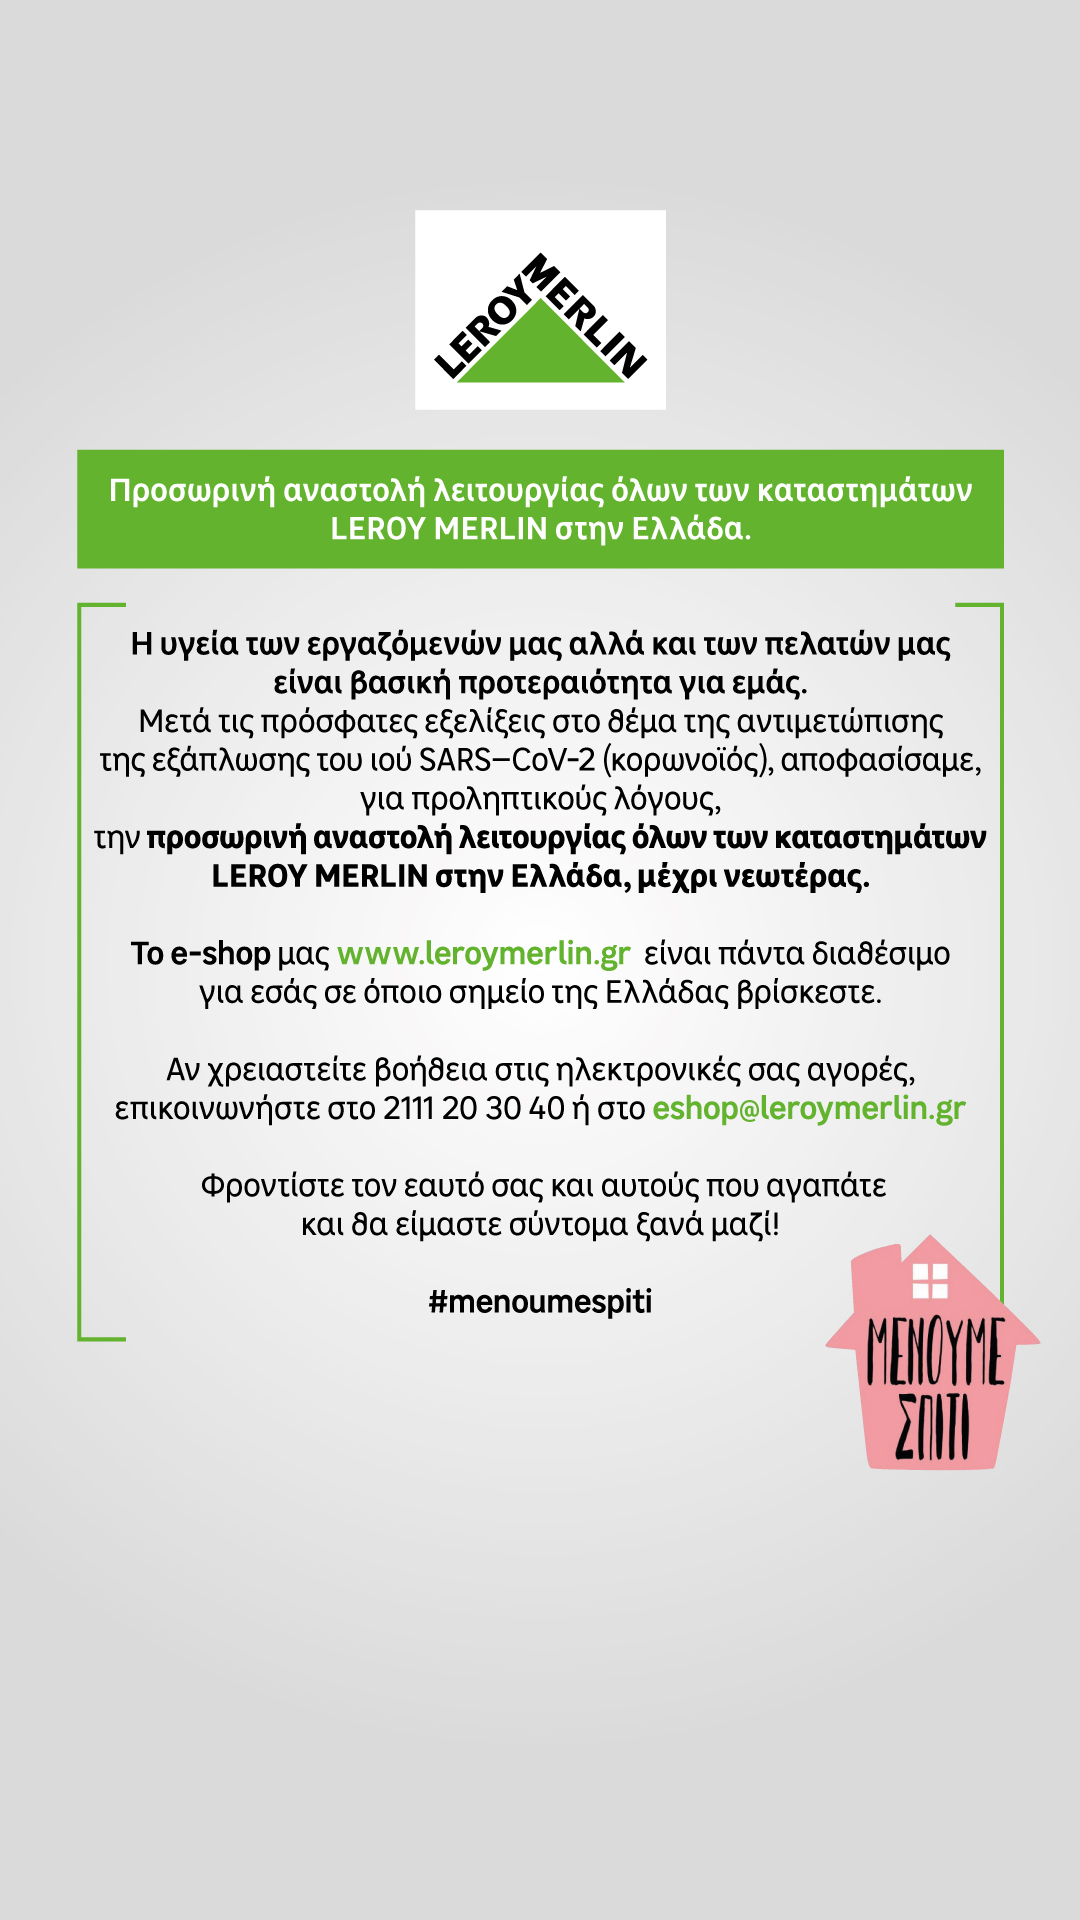 Προσωρινή αναστολή λειτουργίας όλων των καταστημάτων LEROY MERLIN στην Ελλάδα.